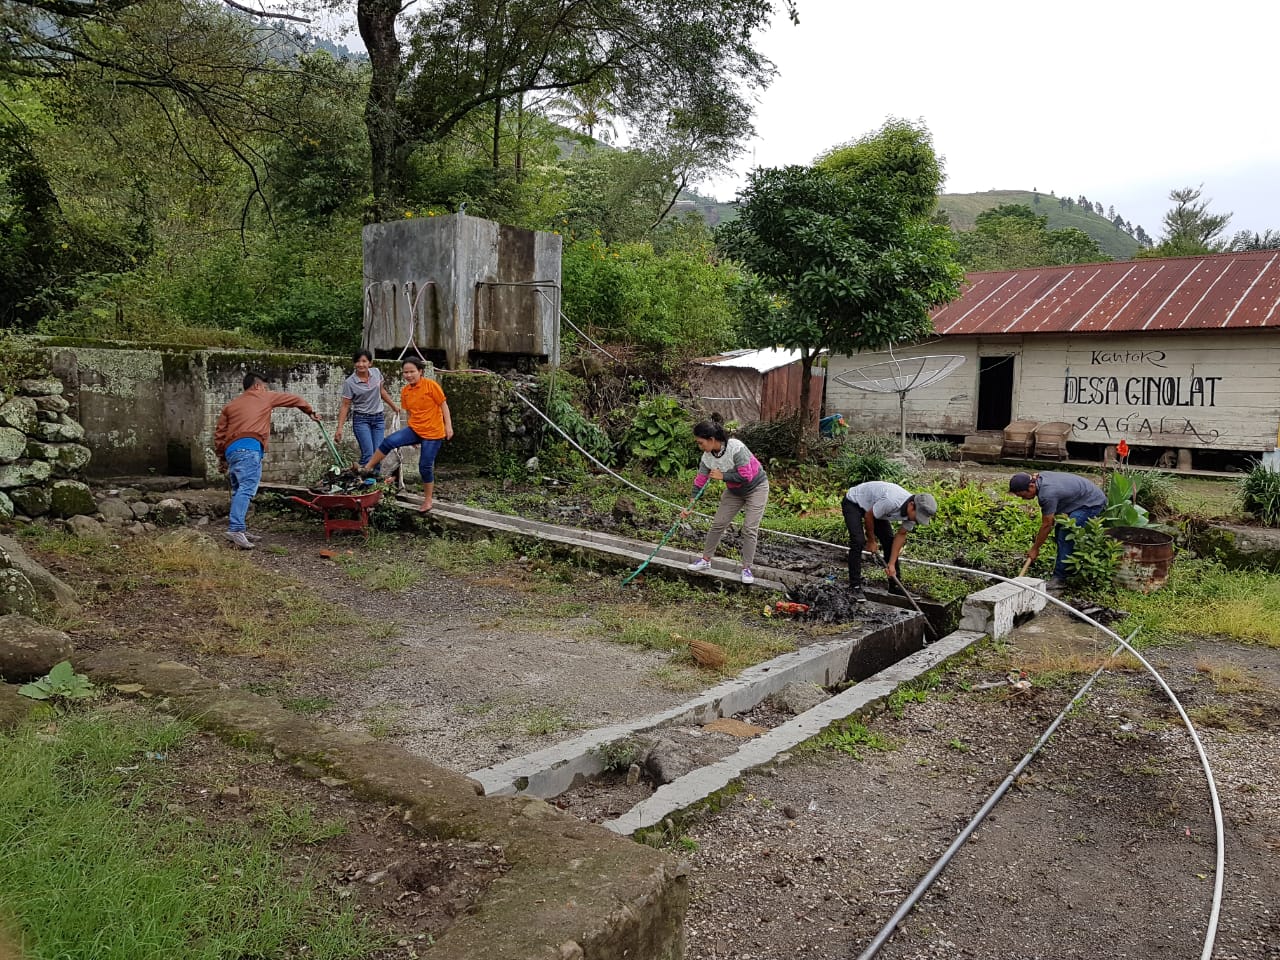 Foto : Masyarakat dan pemerintah desa ginolat mempersiapkan toilet untuk peserta lari Marathon Samosir Lake Toba Ultra 2018